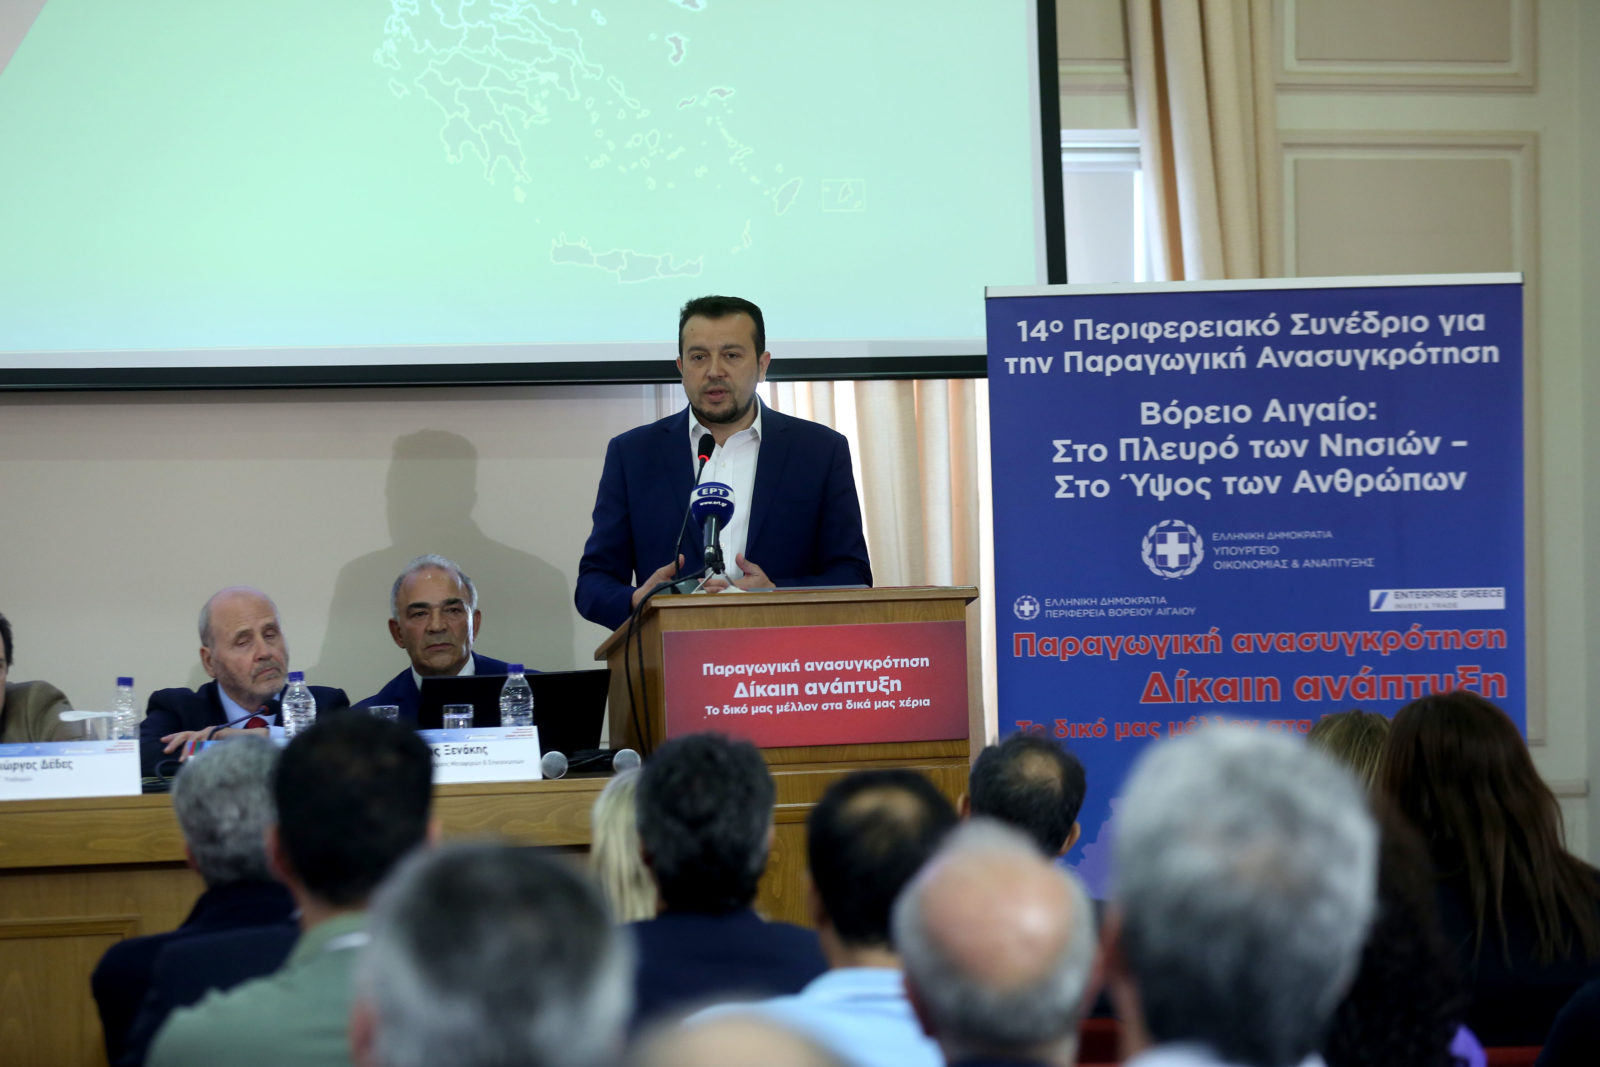 Ο υπουργός Ψηφιακής Πολιτικής, Τηλεπικοινωνιών και Ενημέρωσης Νίκος Παππάς μιλάει κατά τη διάρκεια του 14ου Συνεδρίου για την Παραγωγική Ανασυγκρότηση της Περιφέρειας Βορείου Αιγαίου με τίτλο: «Βόρειο Αιγαίο: Στο Πλευρό των Νησιών – Στο Ύψος των Ανθρώπων», την Πέμπτη 3 Μαΐου 2018, στη Μυτιλήνη. Οι εργασίες του συνεδρίου θα ολοκληρωθούν το βράδυ με την ομιλία του πρωθυπουργού Αλέξη Τσίπρα. ΑΠΕ ΜΠΕ/ΑΠΕ ΜΠΕ/ΟΡΕΣΤΗΣ ΠΑΝΑΓΙΩΤΟΥ